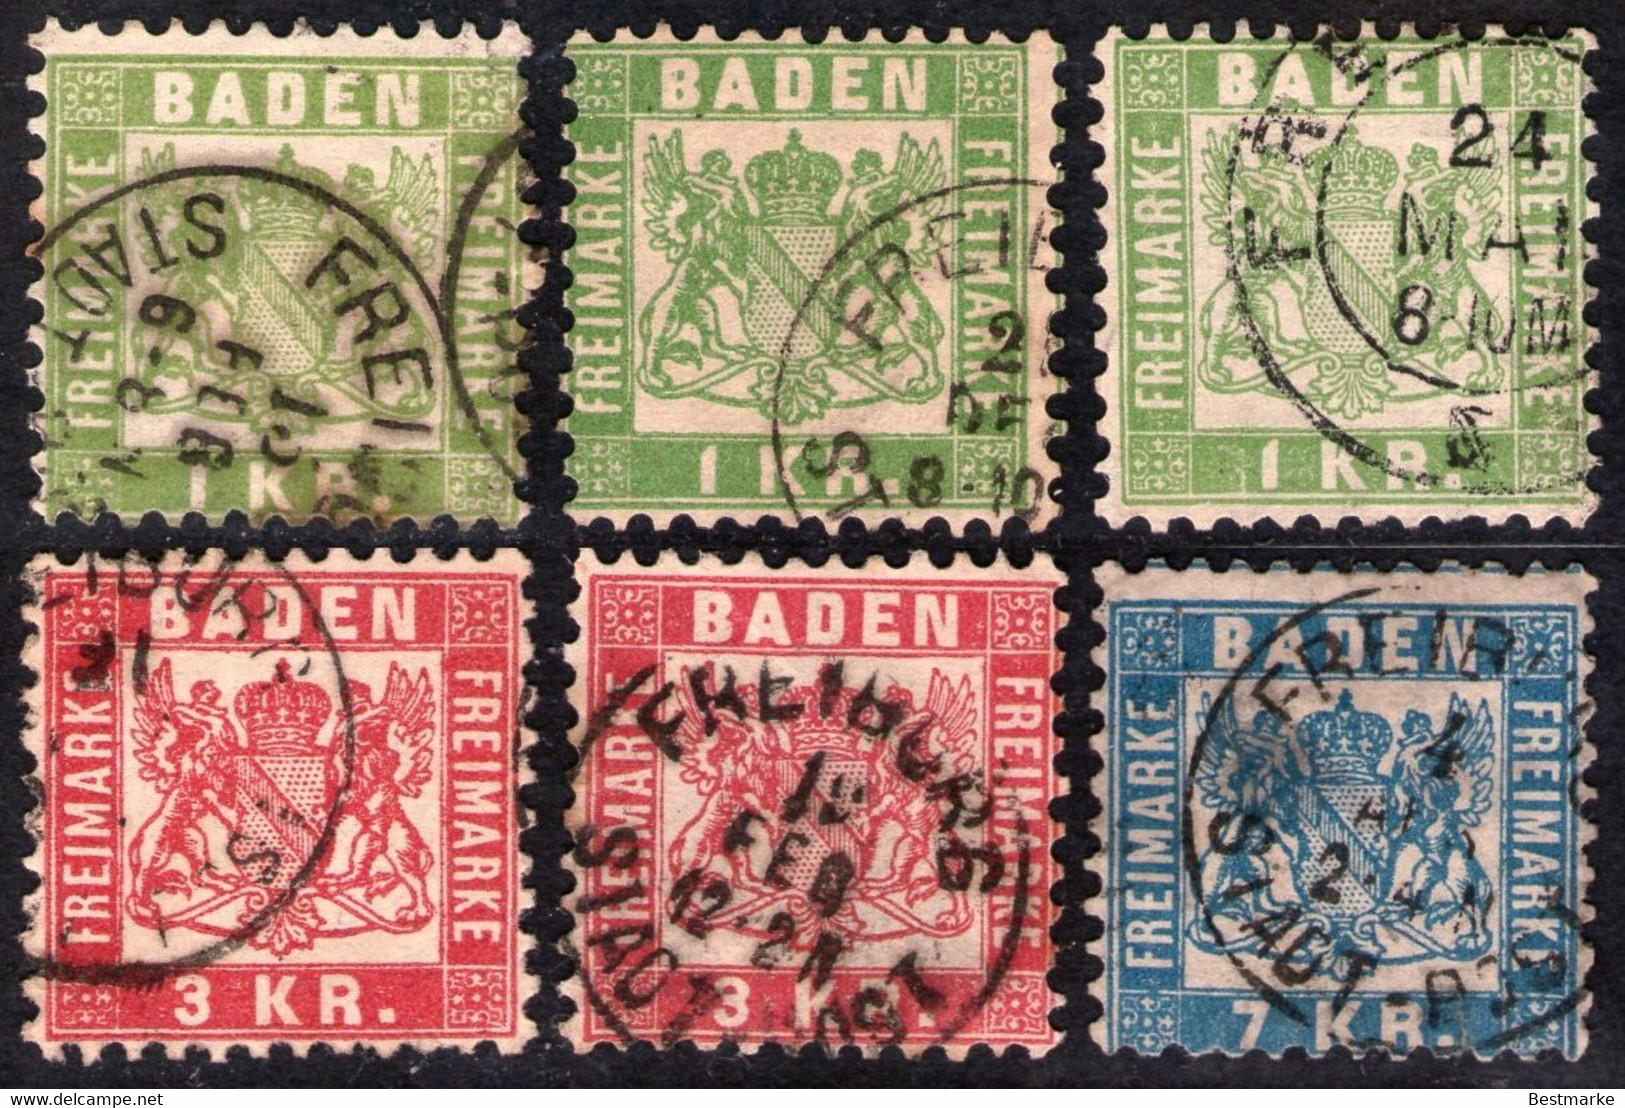 Lot 1193 - Freiburg In Baden Auf Nr. 23 Bis 25 - Stempelvarianten - Teils Geprüft BPP - Sammlungen